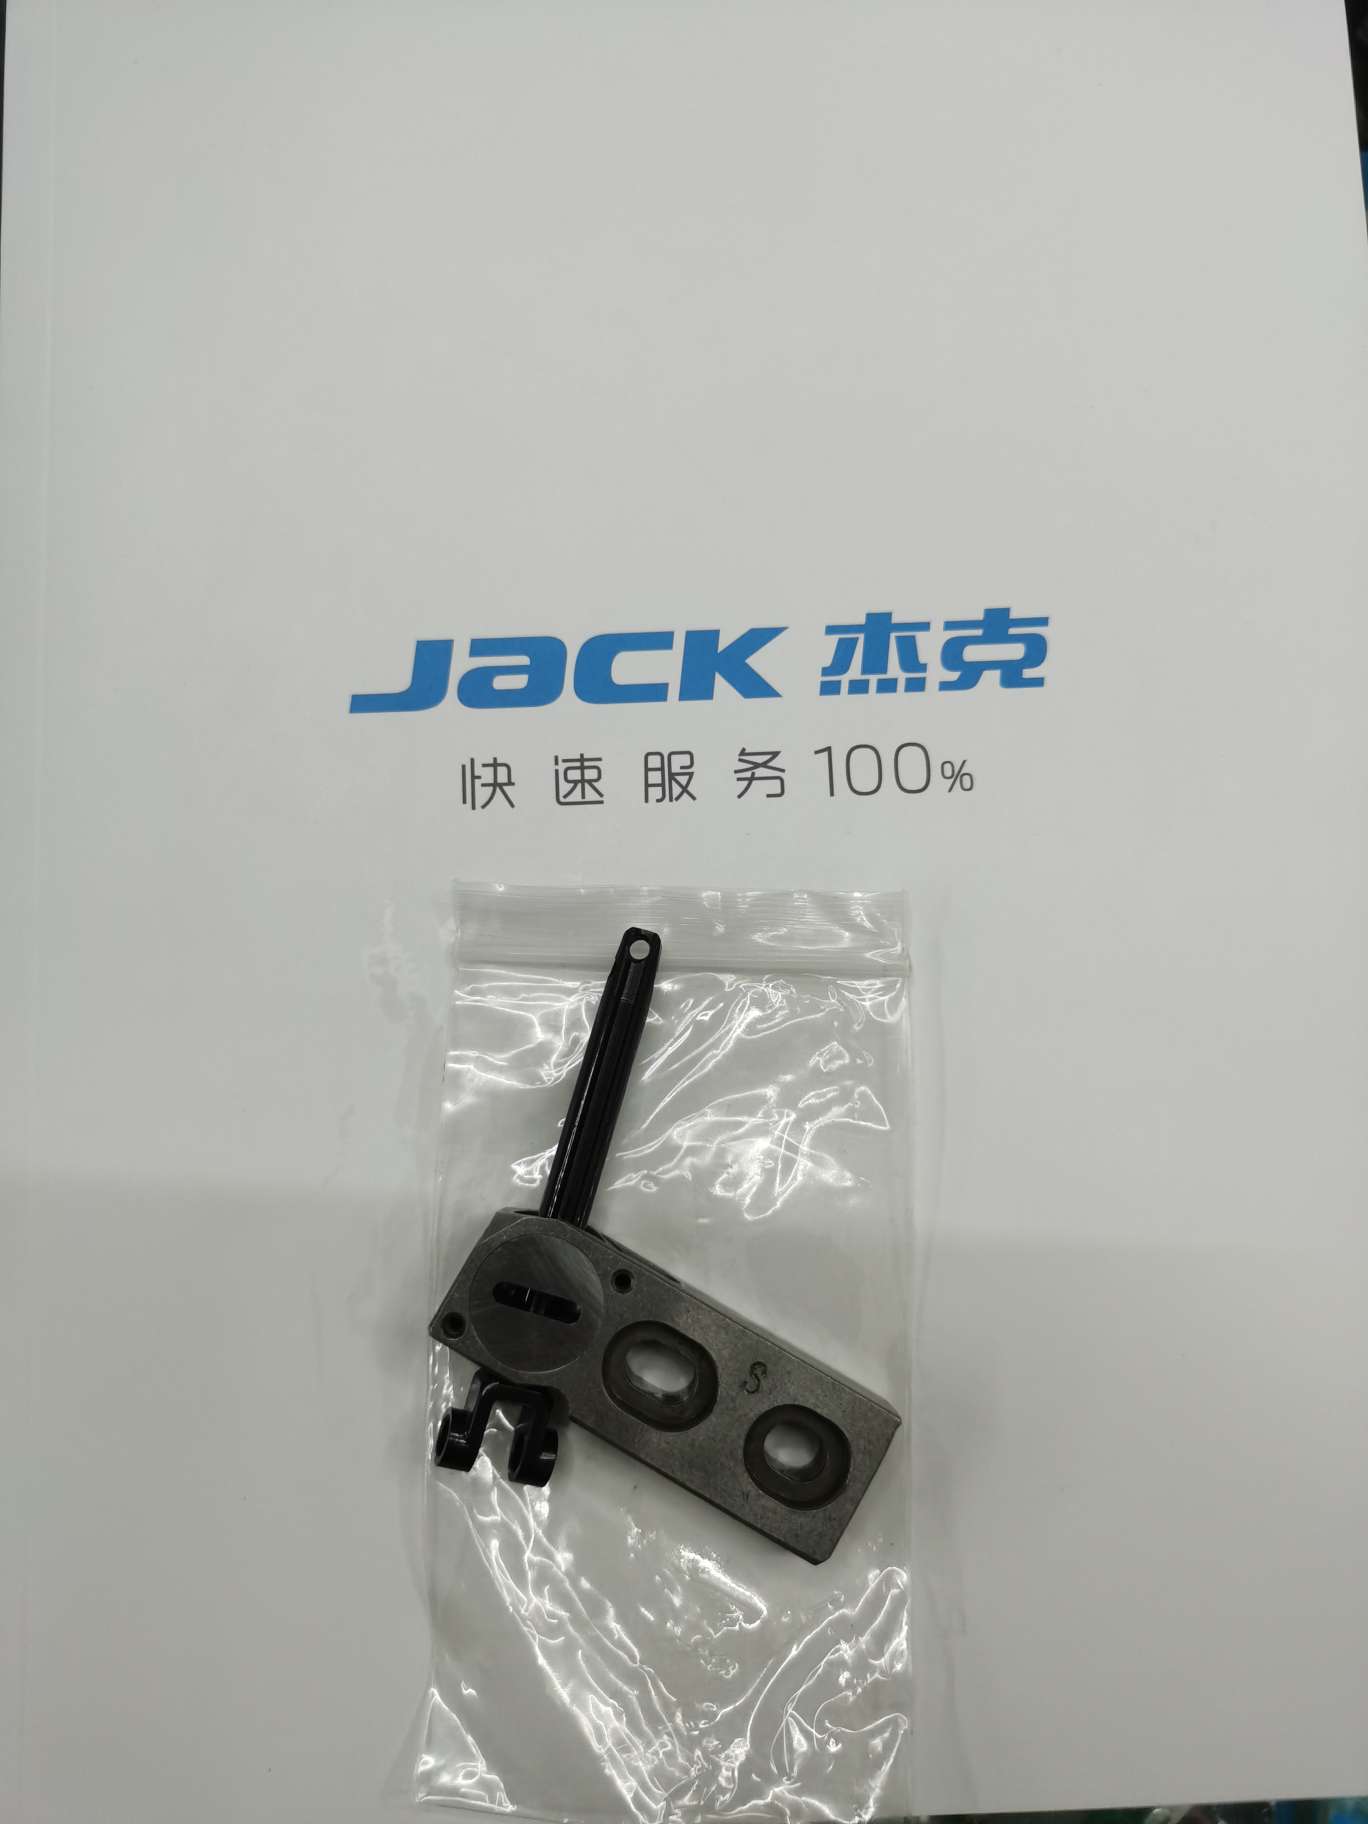 杰克Jack上弯针导套组件物美价廉欢迎选购